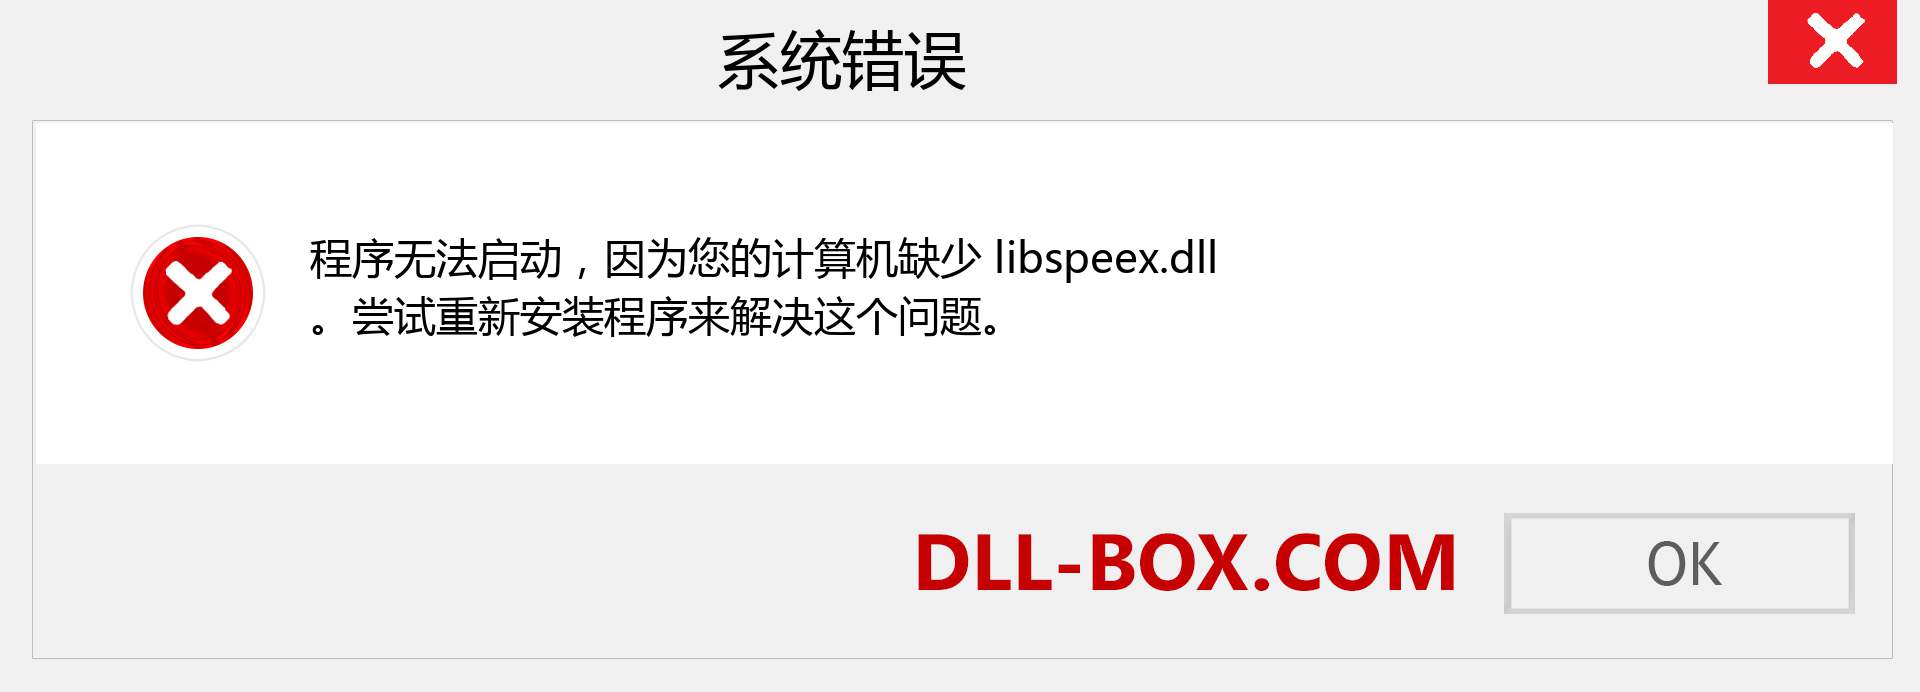 libspeex.dll 文件丢失？。 适用于 Windows 7、8、10 的下载 - 修复 Windows、照片、图像上的 libspeex dll 丢失错误